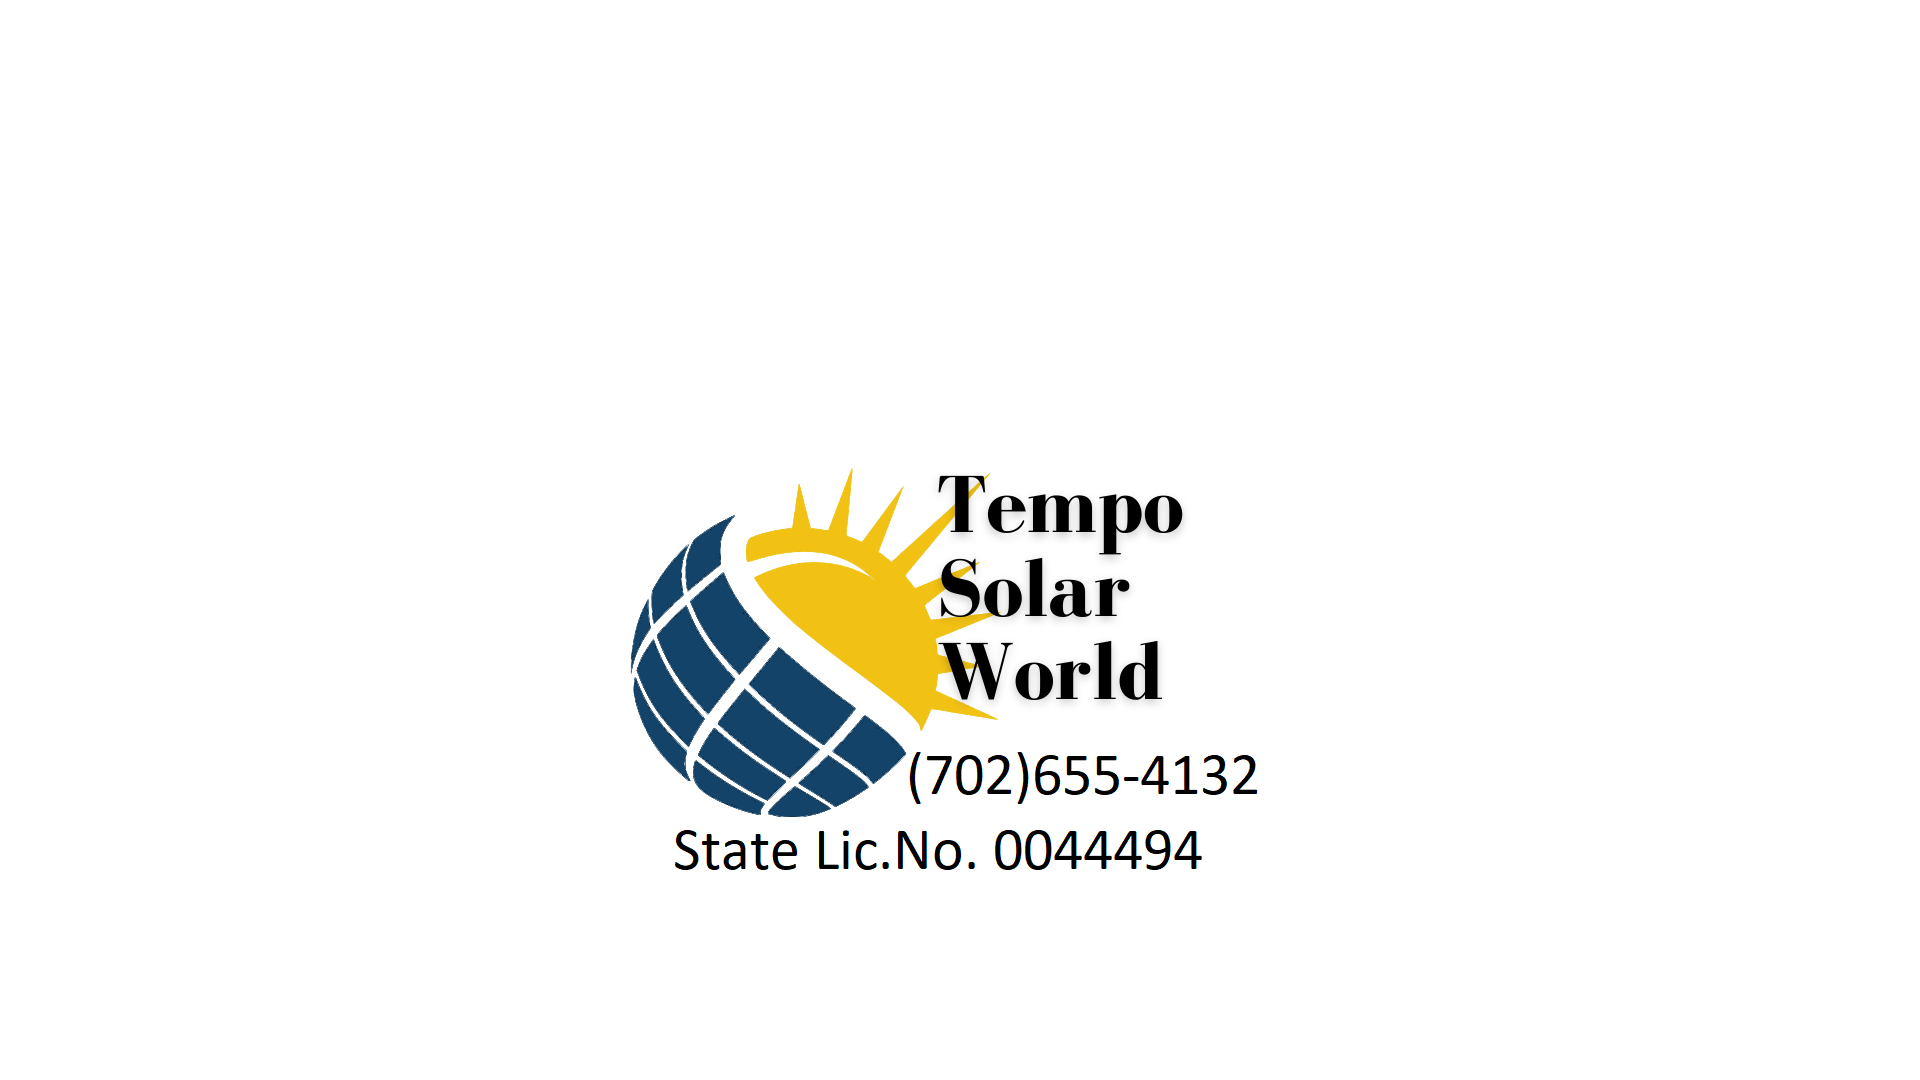 Tempo Solar World logo